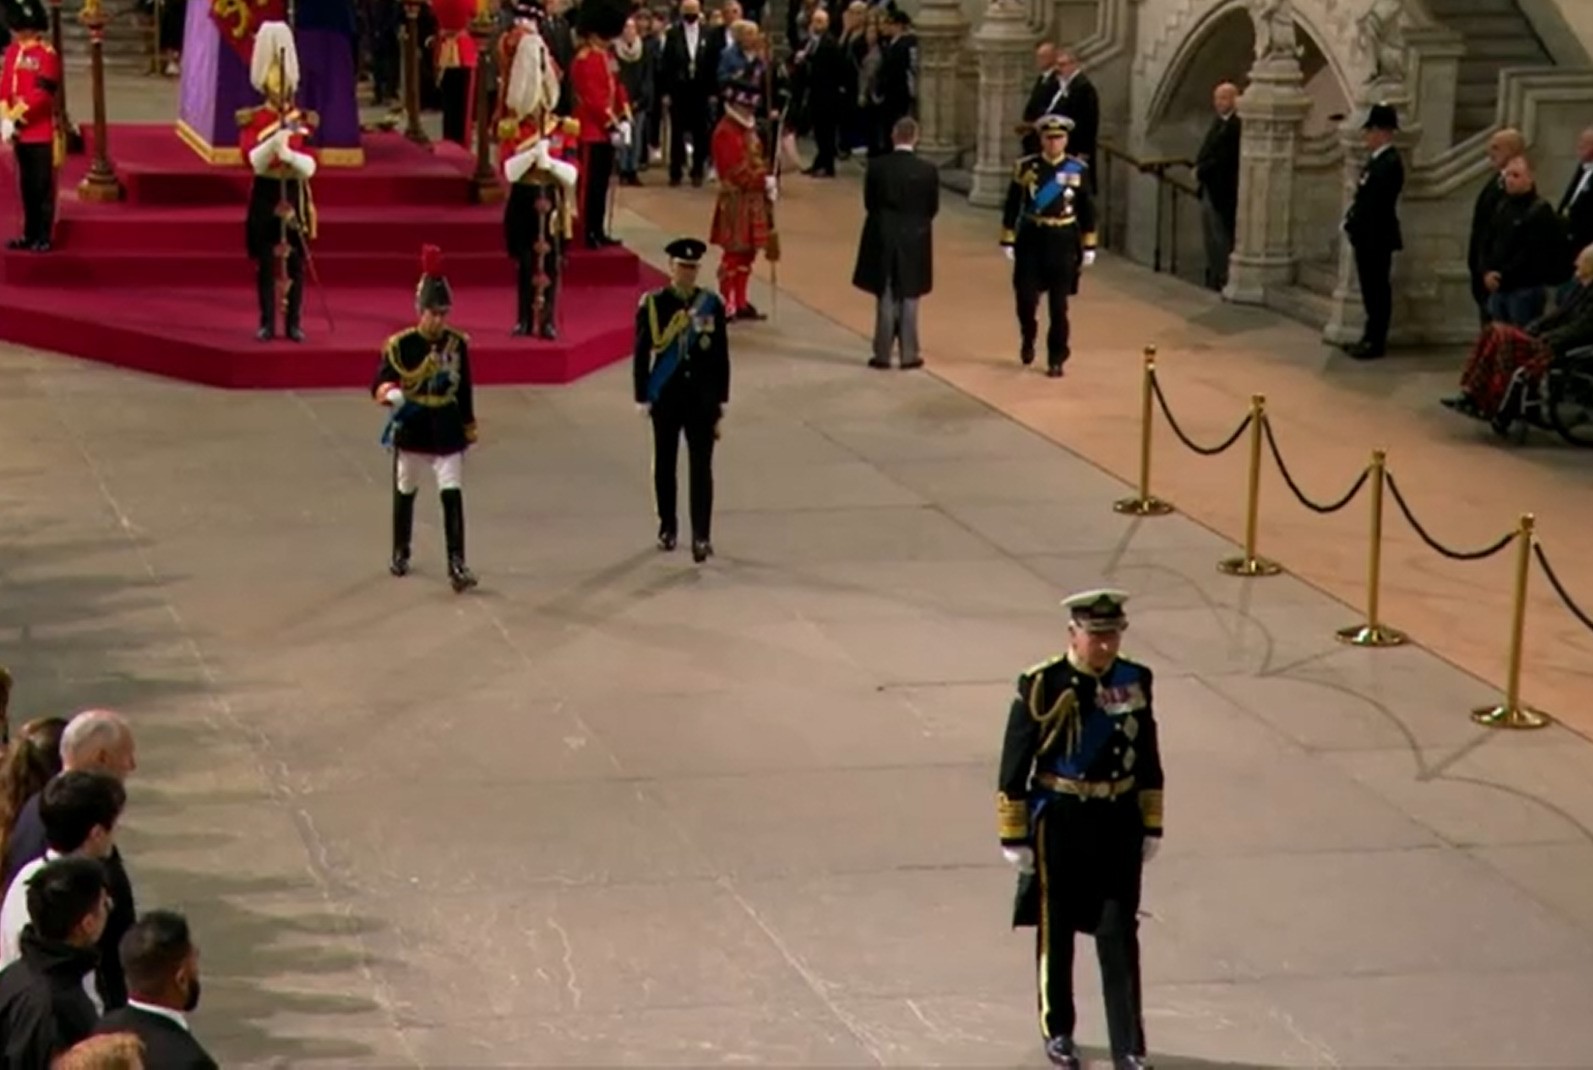 Le roi Charles, la princesse Anne, le prince Edward et le prince Andrew quittent une salle.